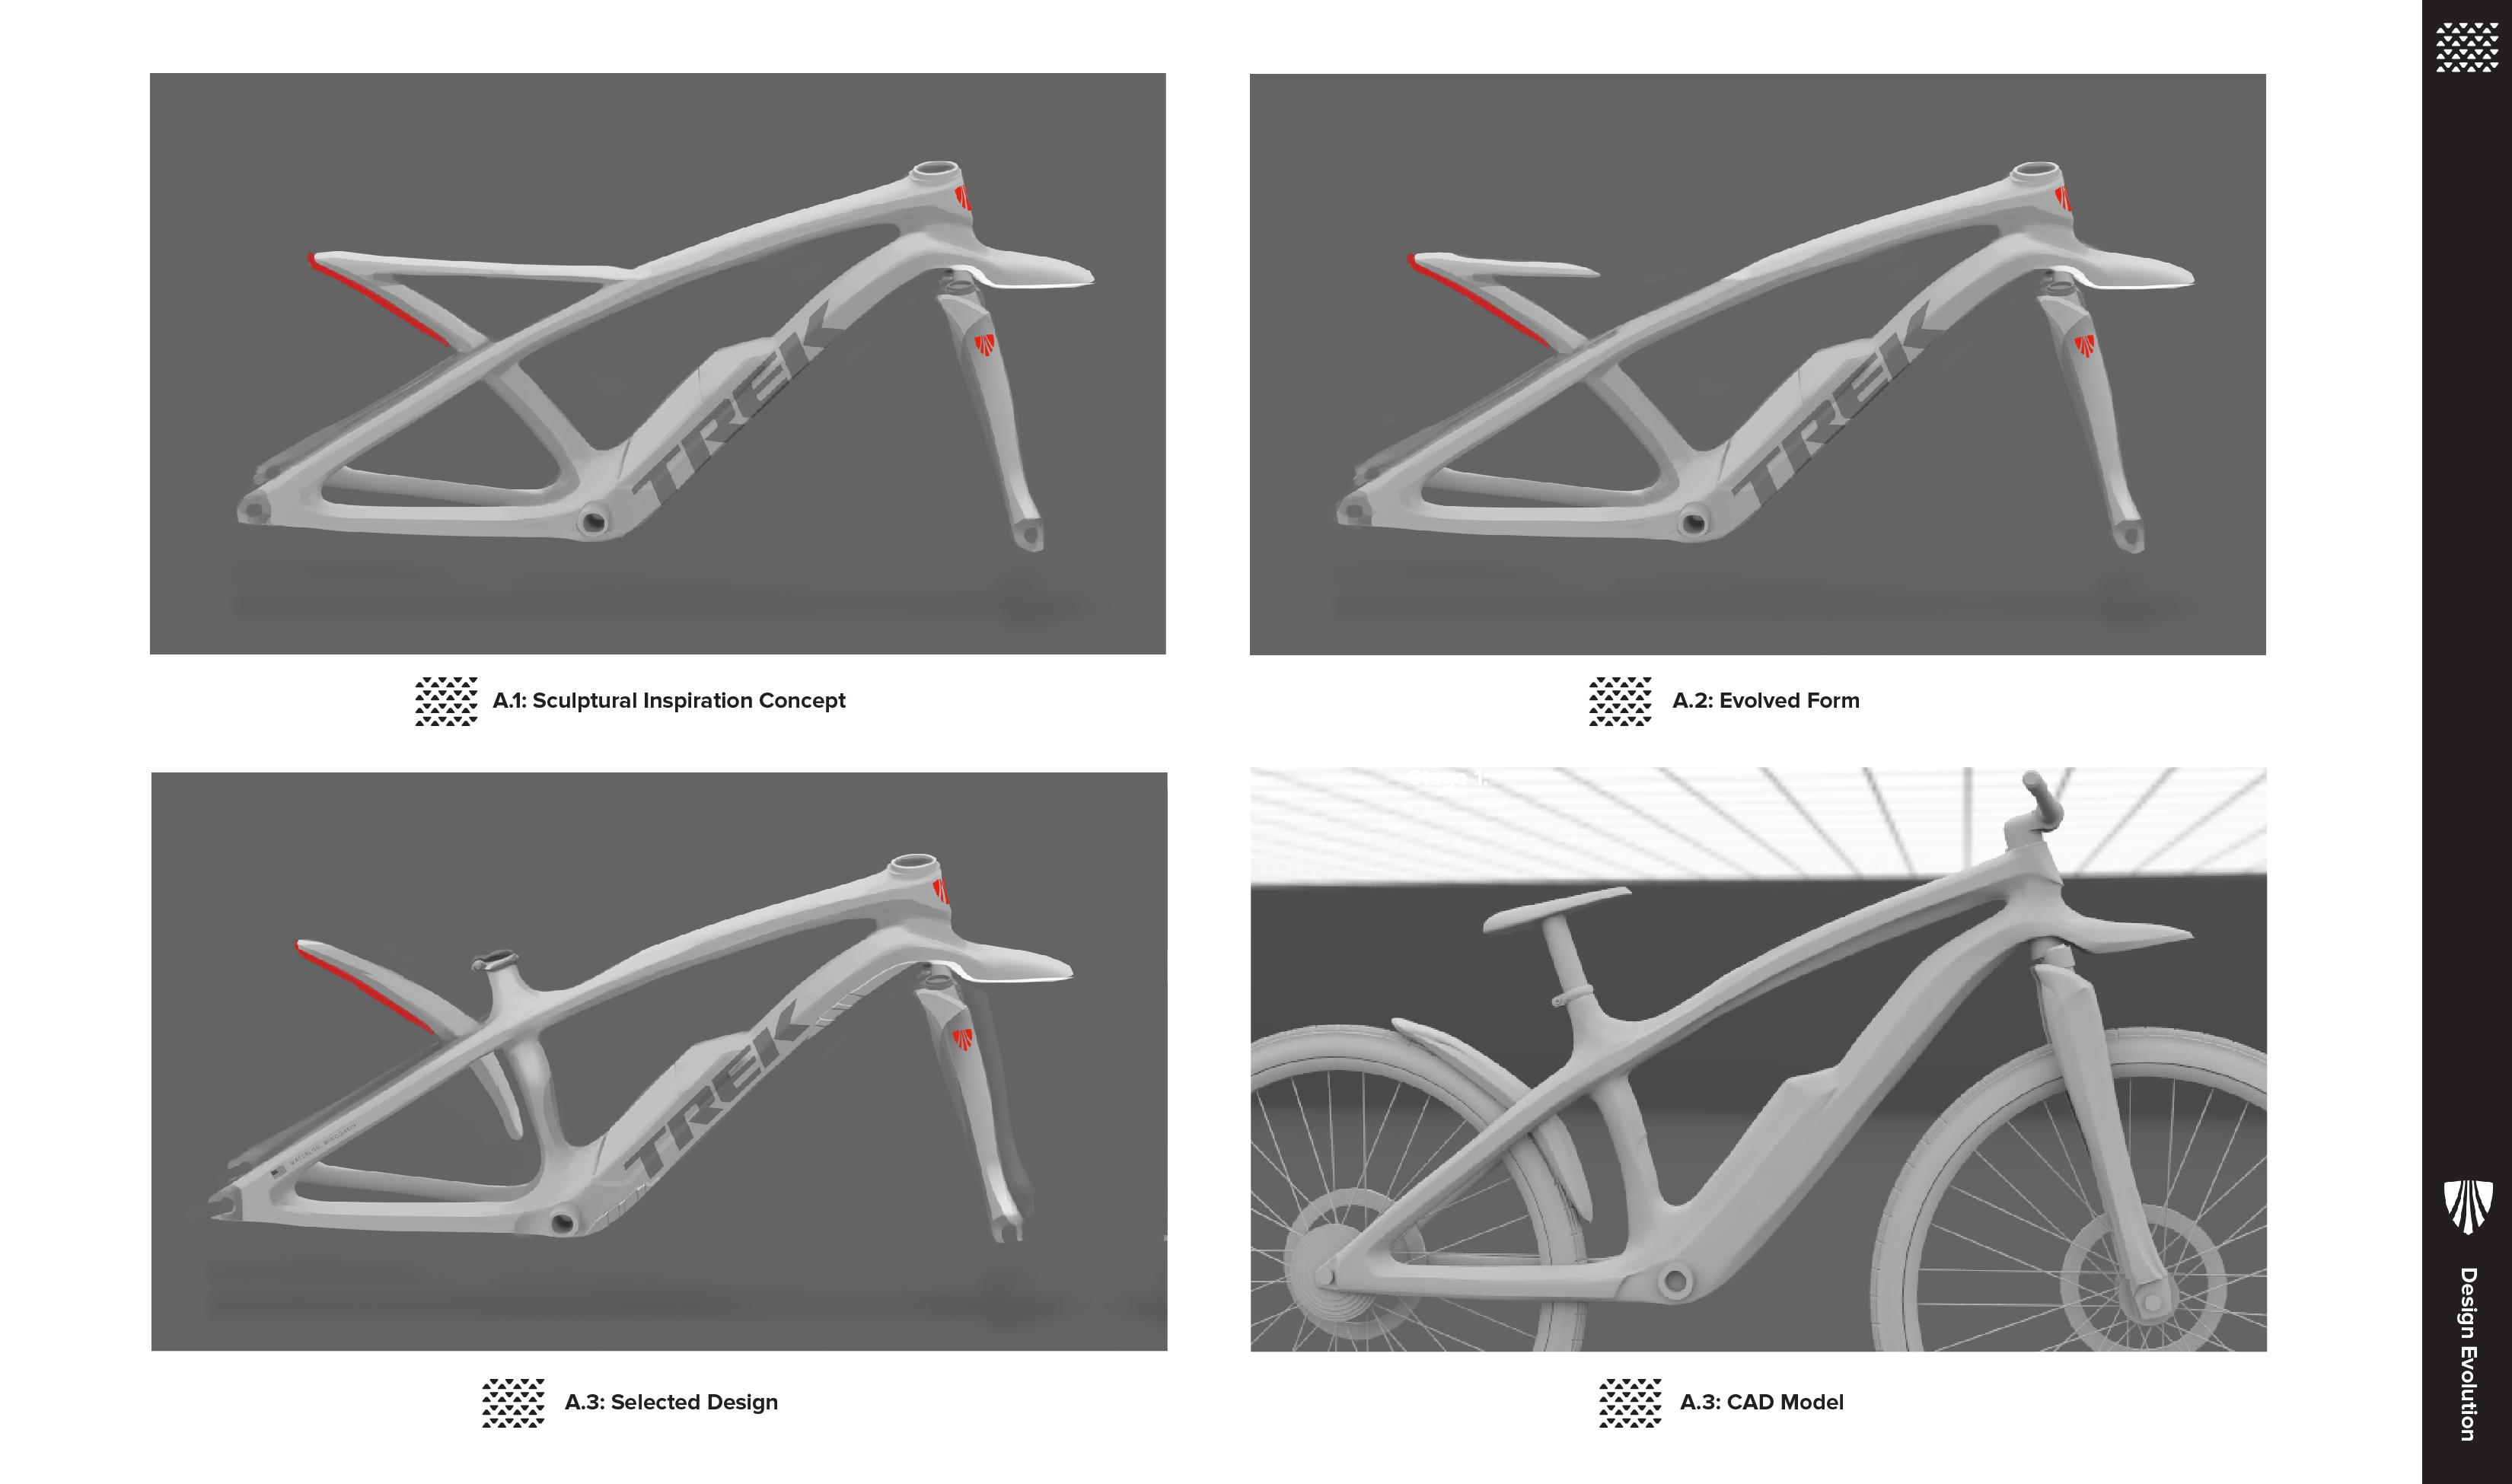 电动山地自行车设计探索综合照明系统和其他性能骑行创新